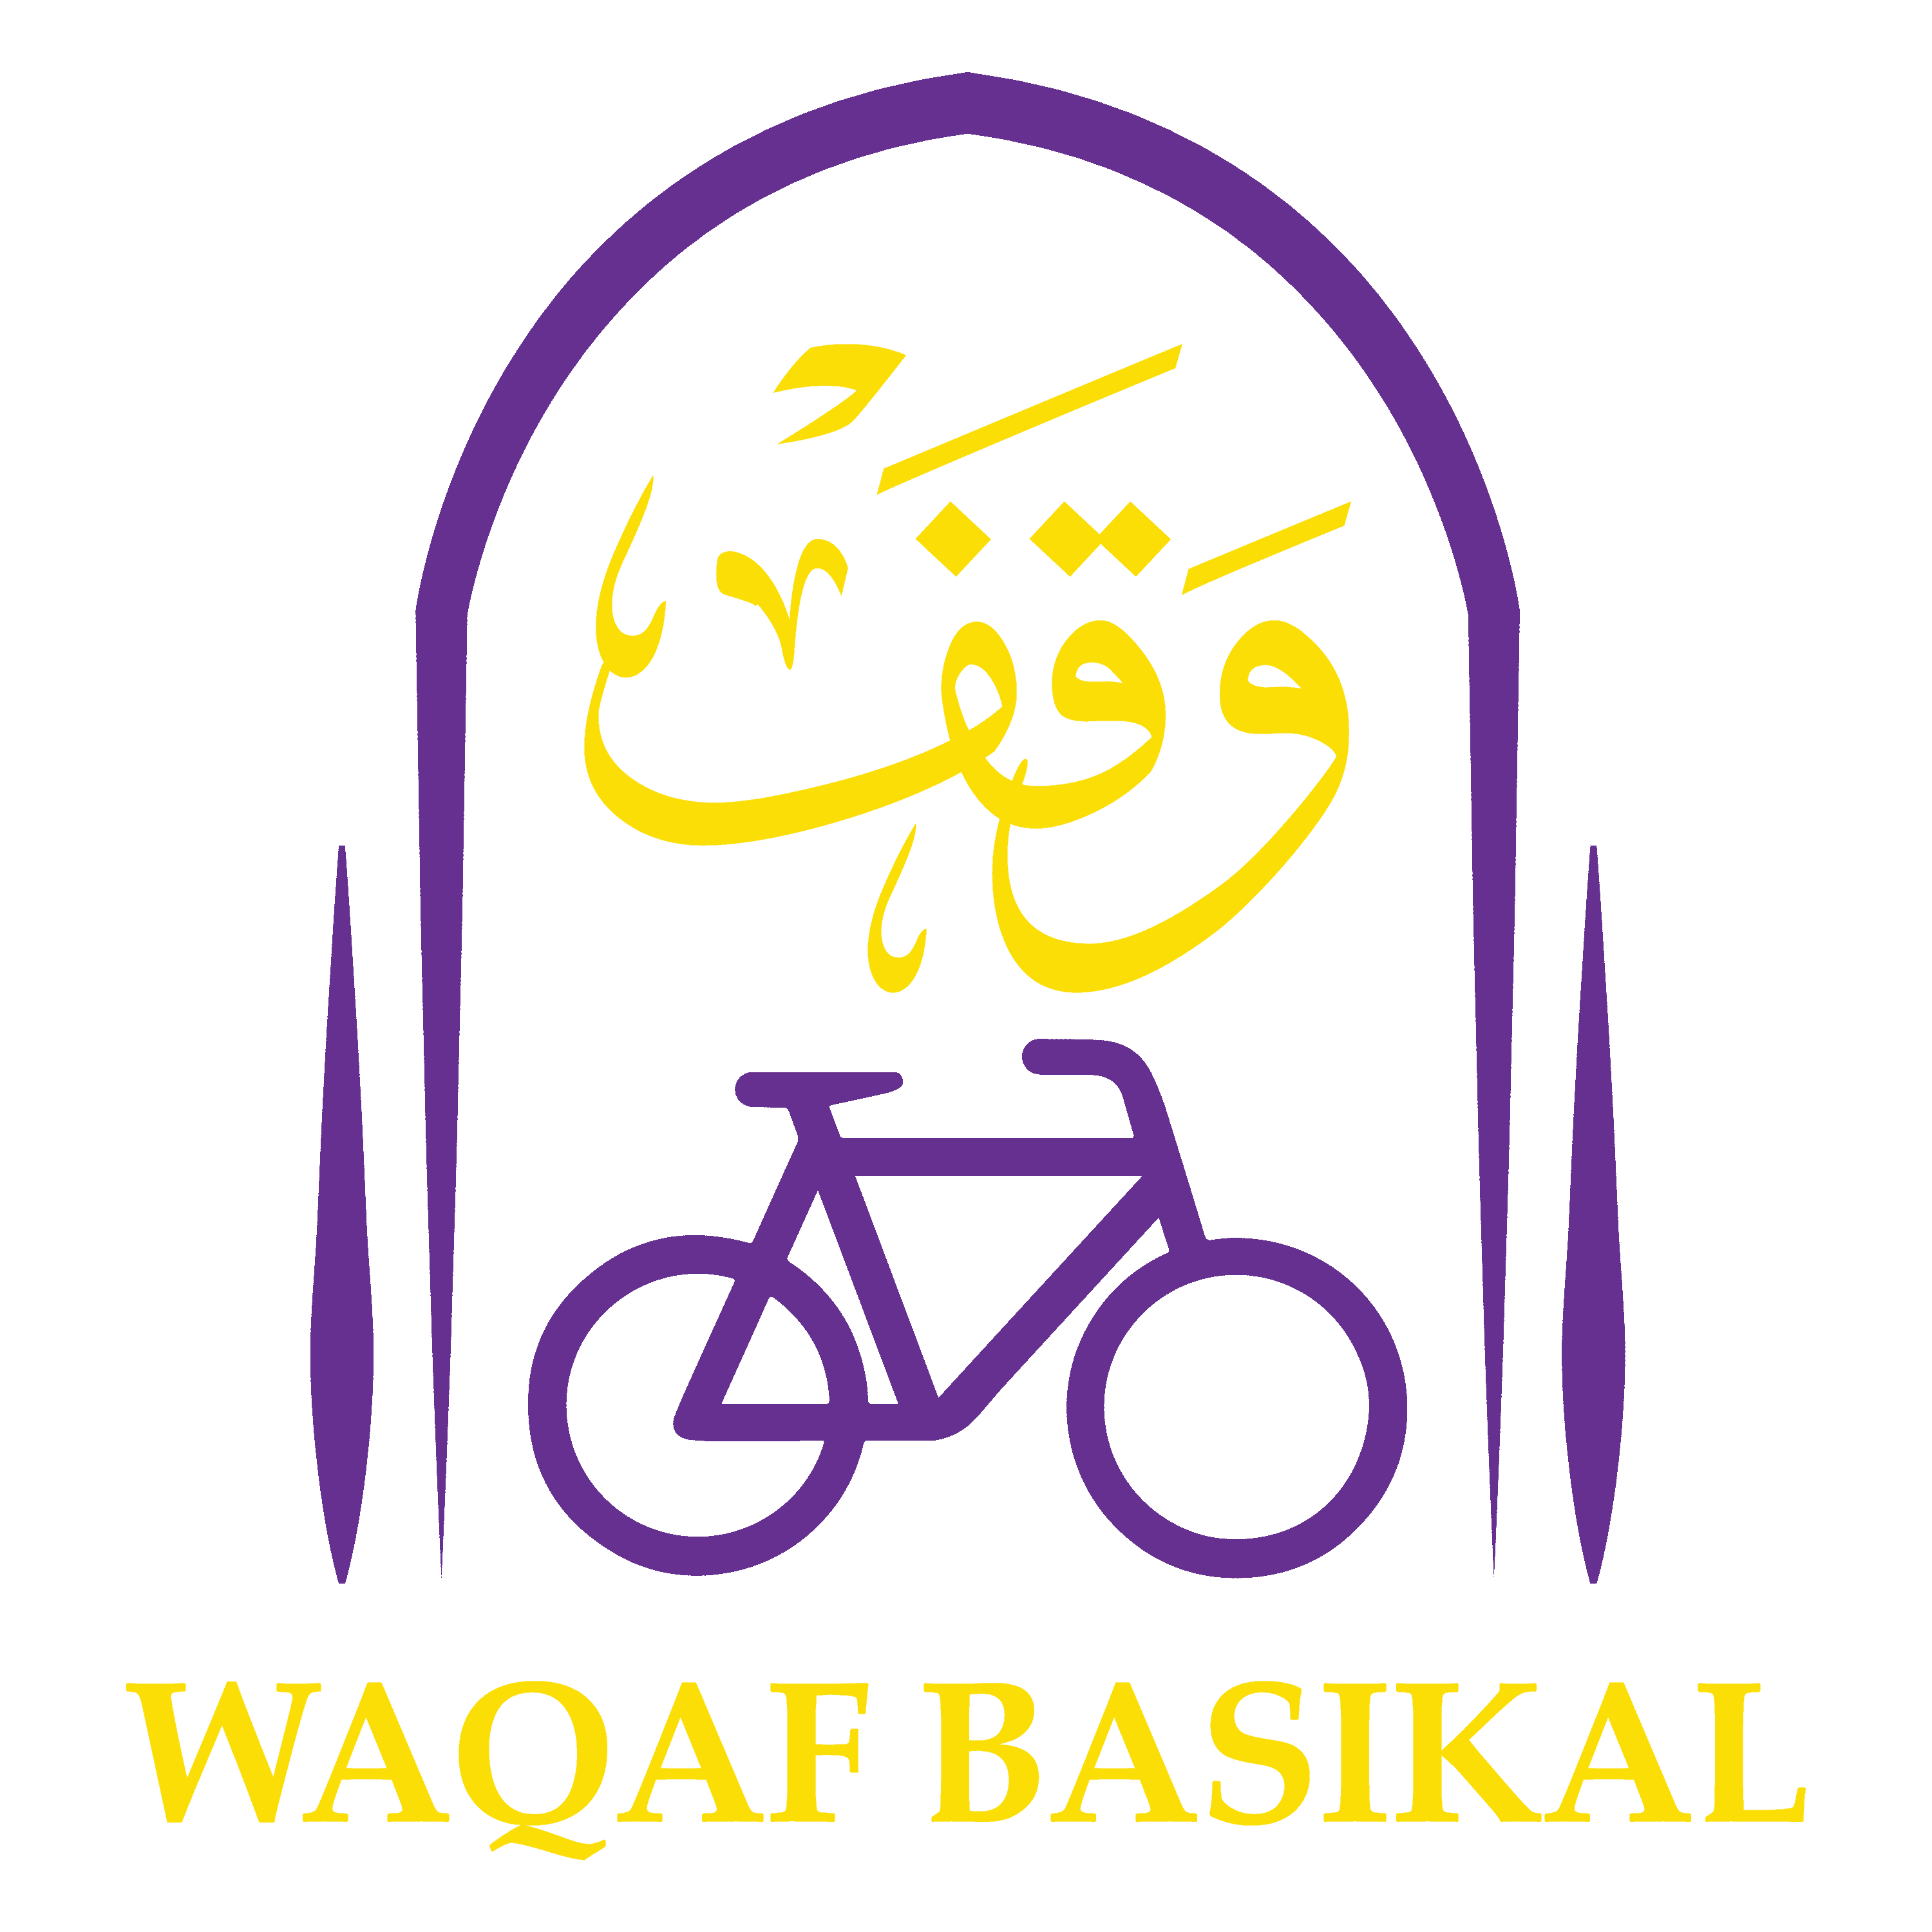 LOGO - WAQAF BASIKAL-01